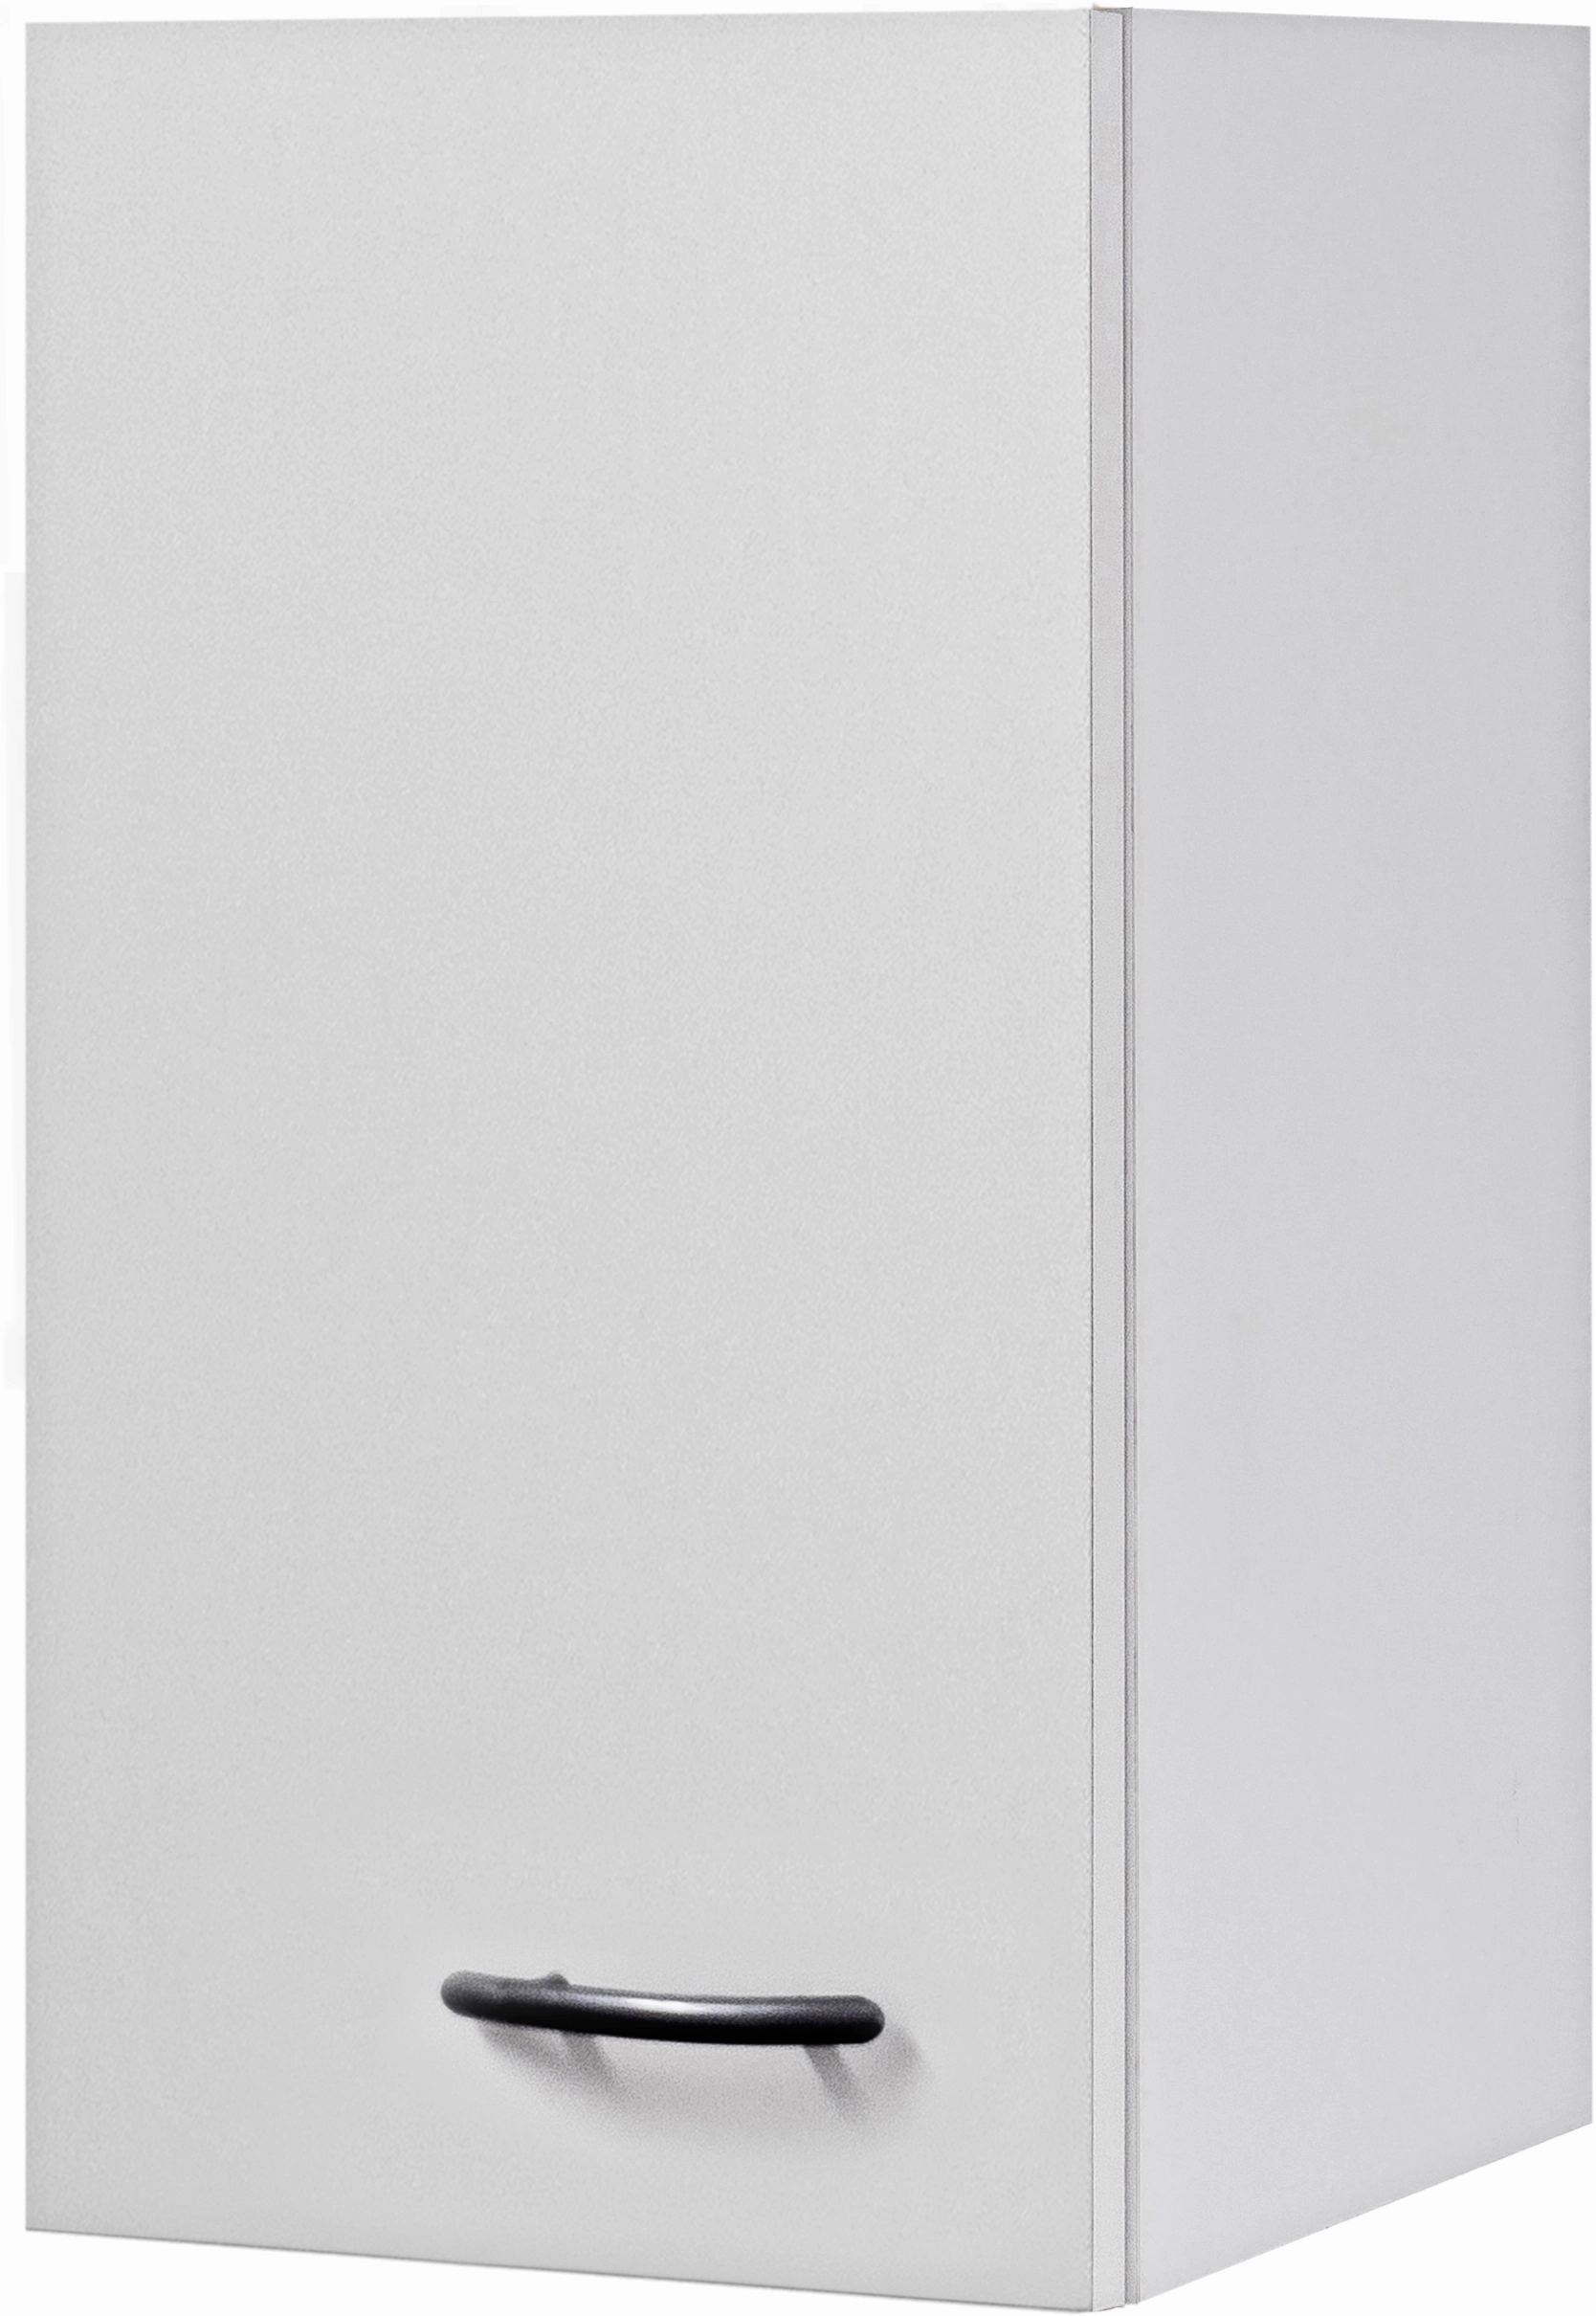 Flex-Well Classic Oberschrank Wito 30 cm Weiß kaufen bei OBI | Hängeschränke